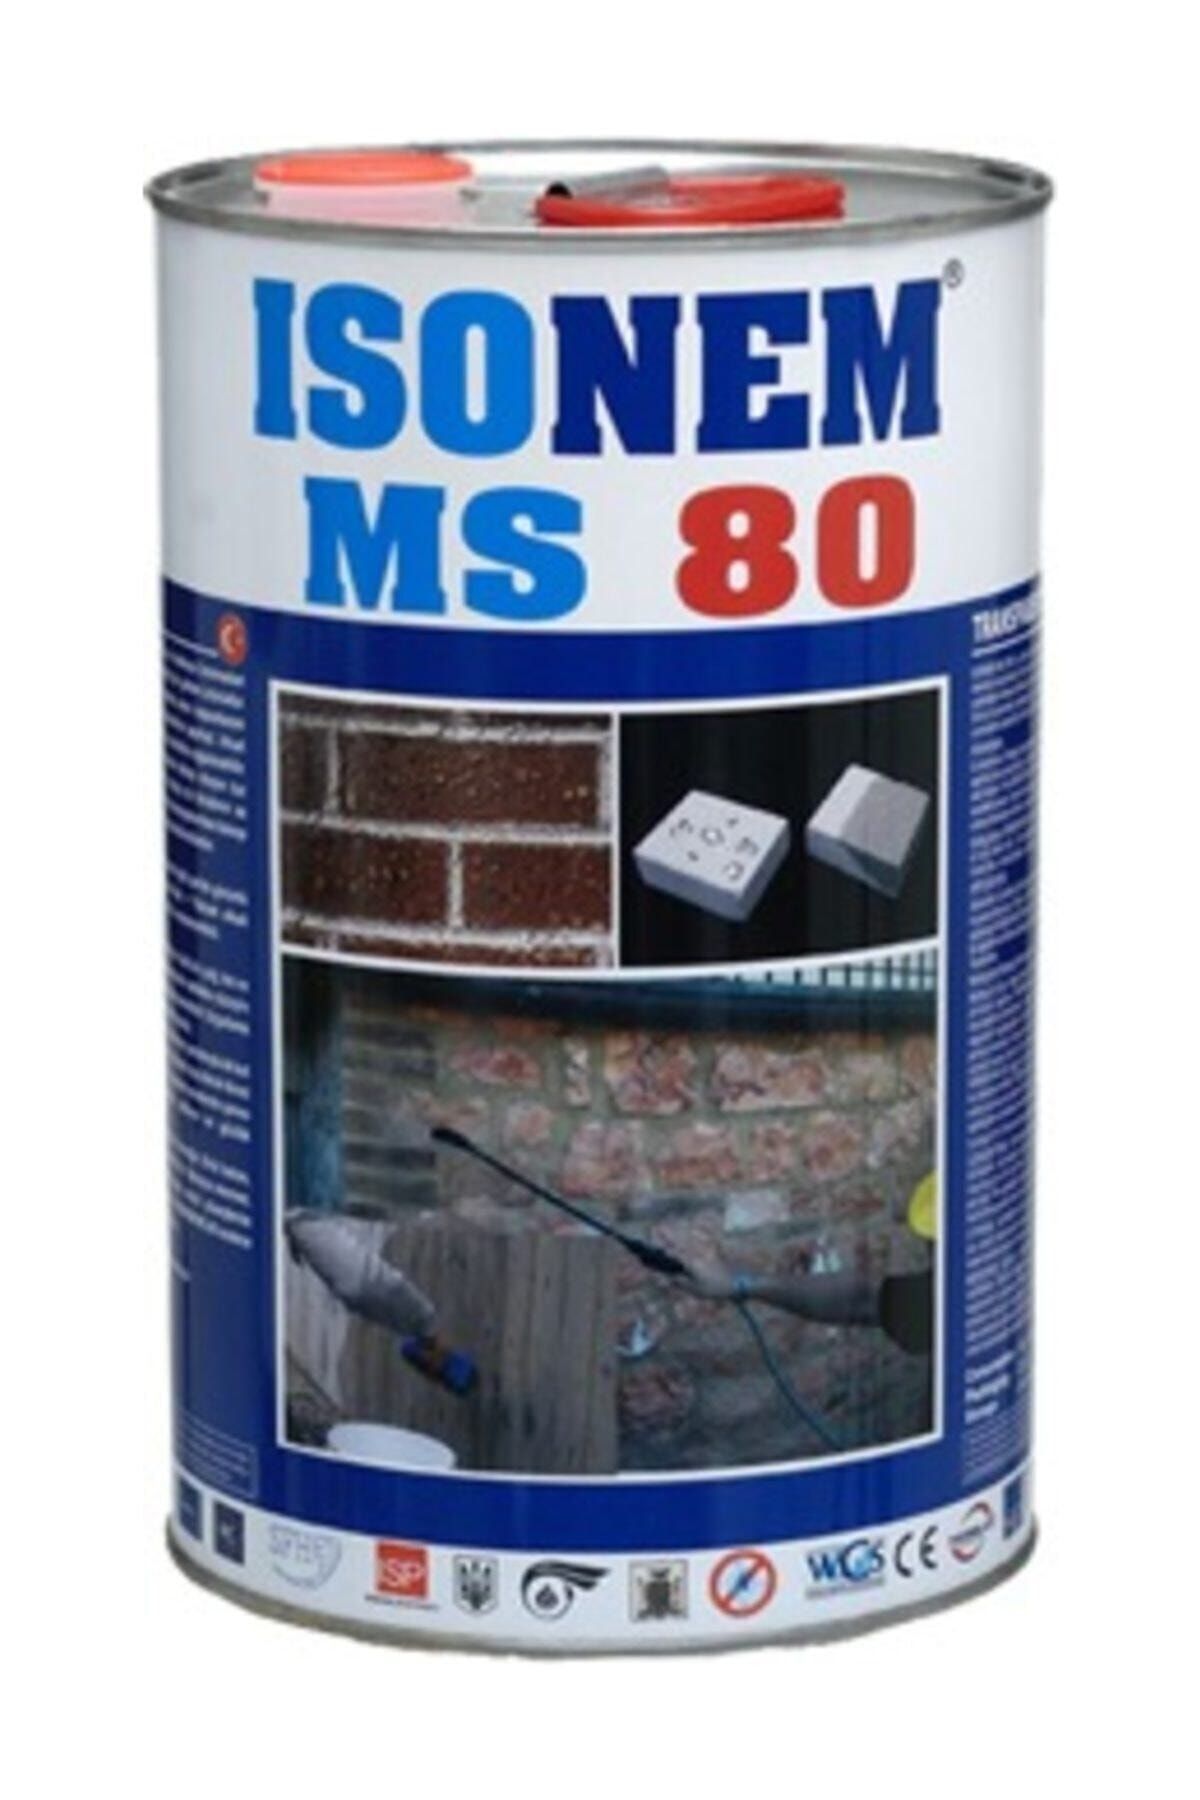 Isonem Ms 80 Doğal Görüntüyü Bozmayan Şeffaf Dış Cephe Su Yalıtımı 3,5 L